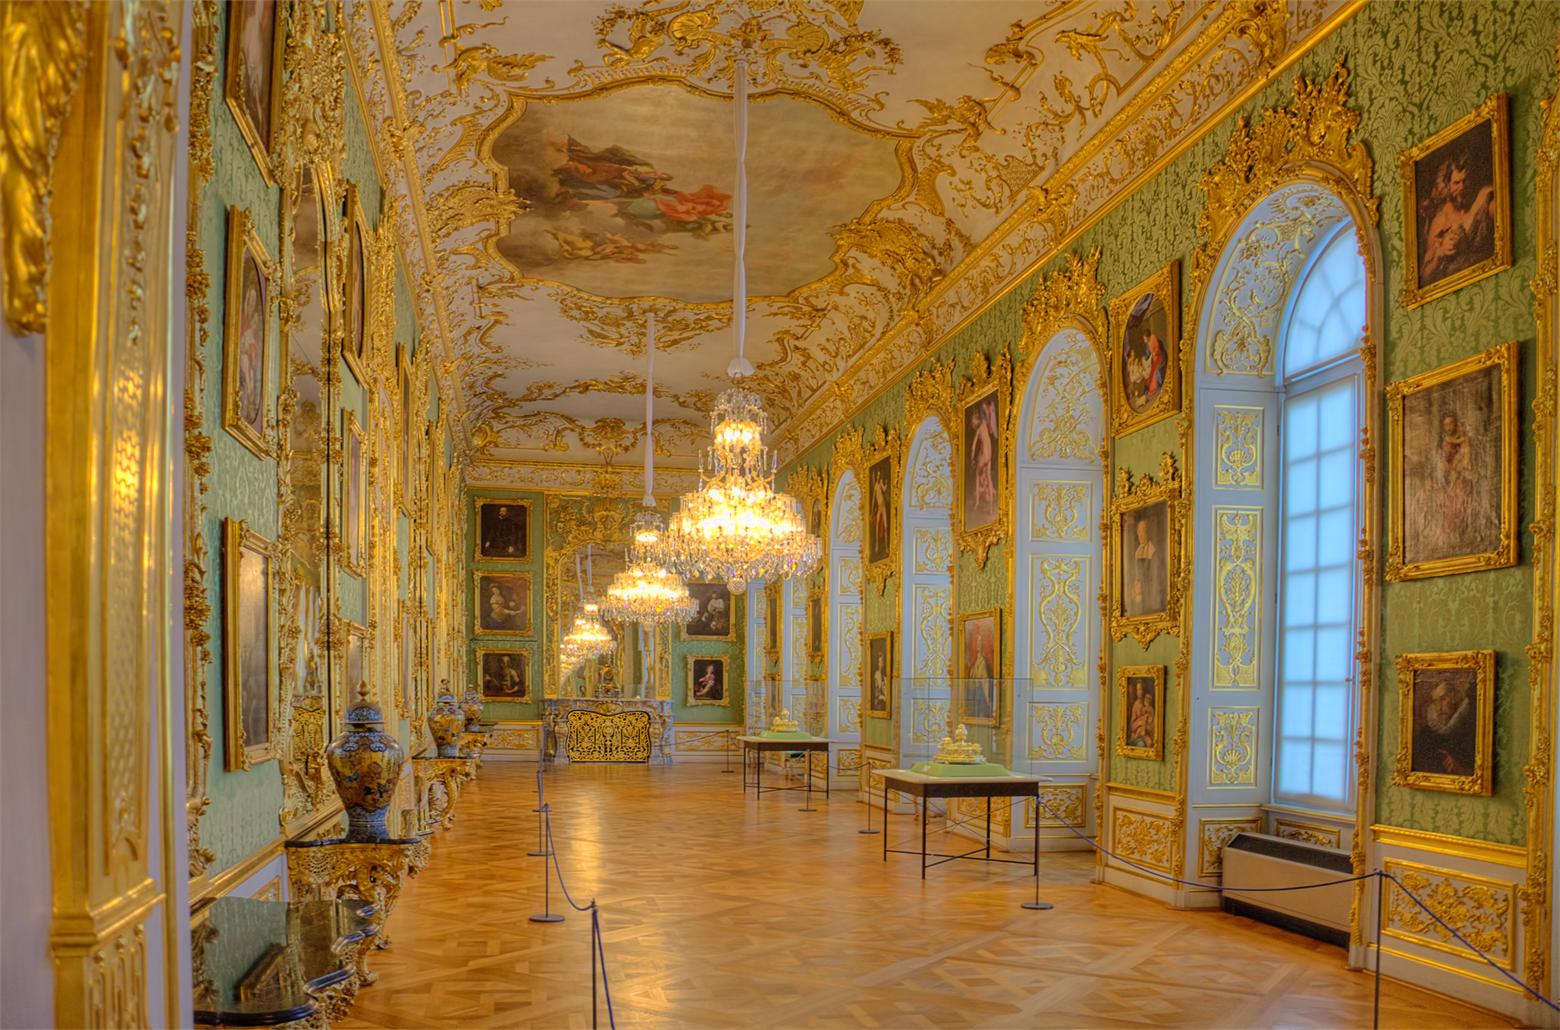 【携程攻略】维也纳美泉宫景点,在奥地利算是最美的宫殿了，茜茜公主嫁到奥地利后的家。相对来说套票…